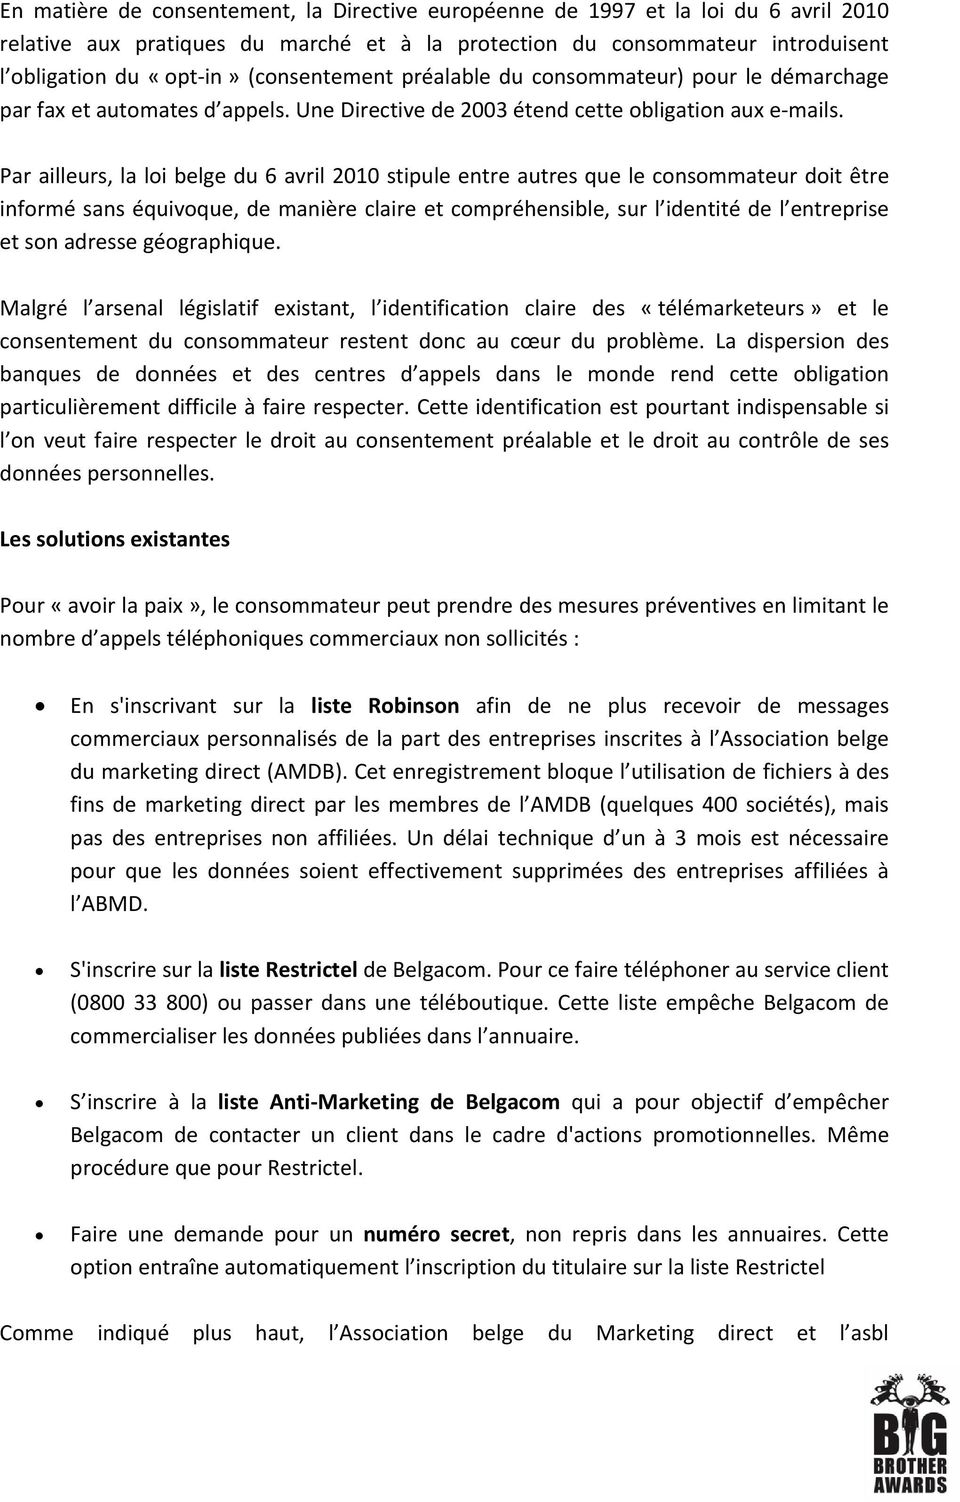 Par ailleurs, la loi belge du 6 avril 2010 stipule entre autres que le consommateur doit être informé sans équivoque, de manière claire et compréhensible, sur l identité de l entreprise et son